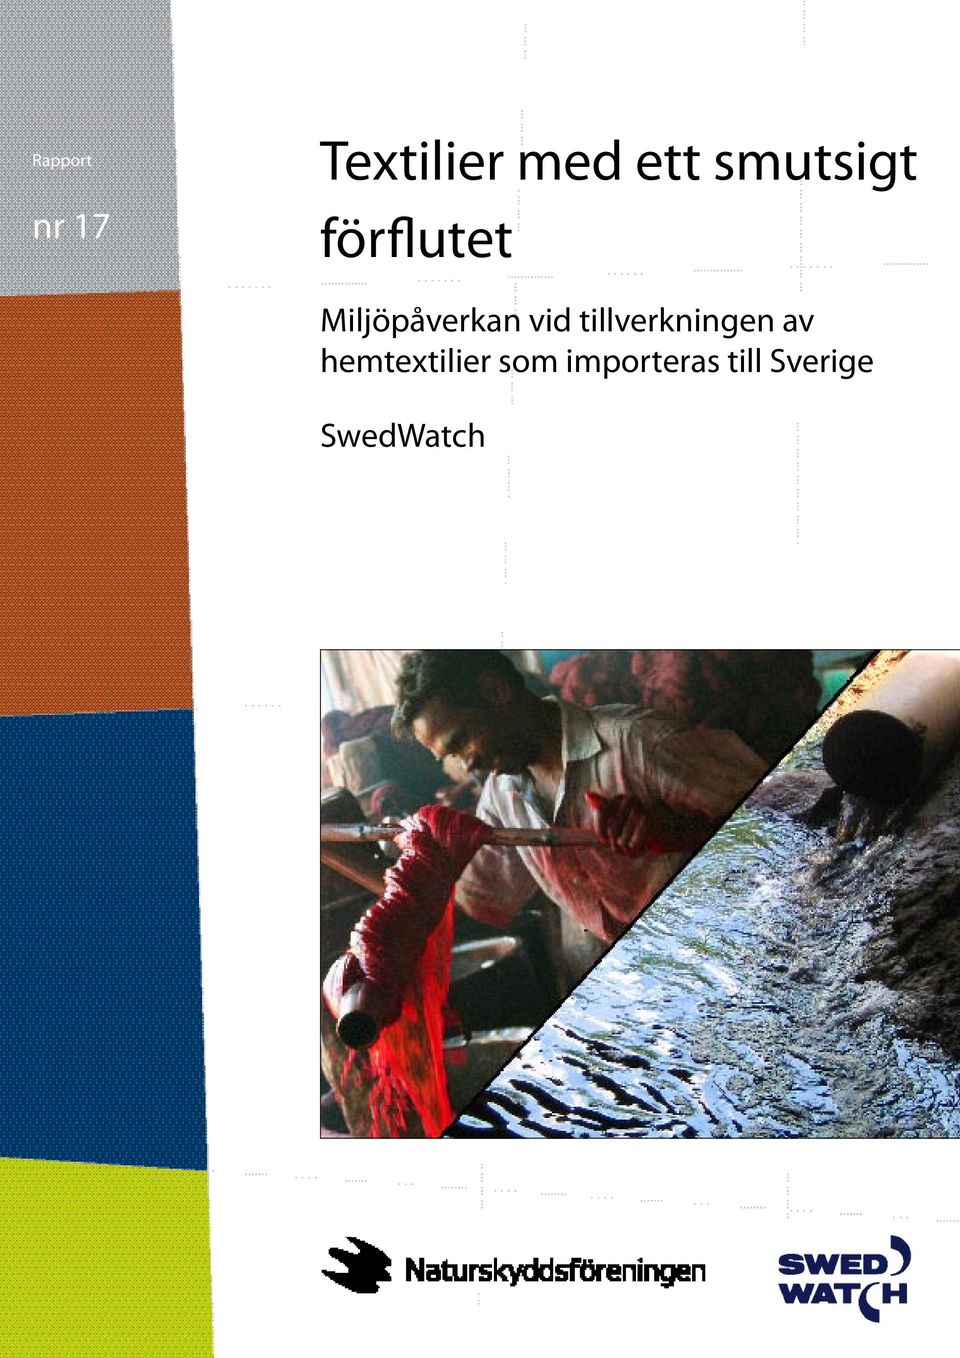 hemtextilier som importeras till Sverige